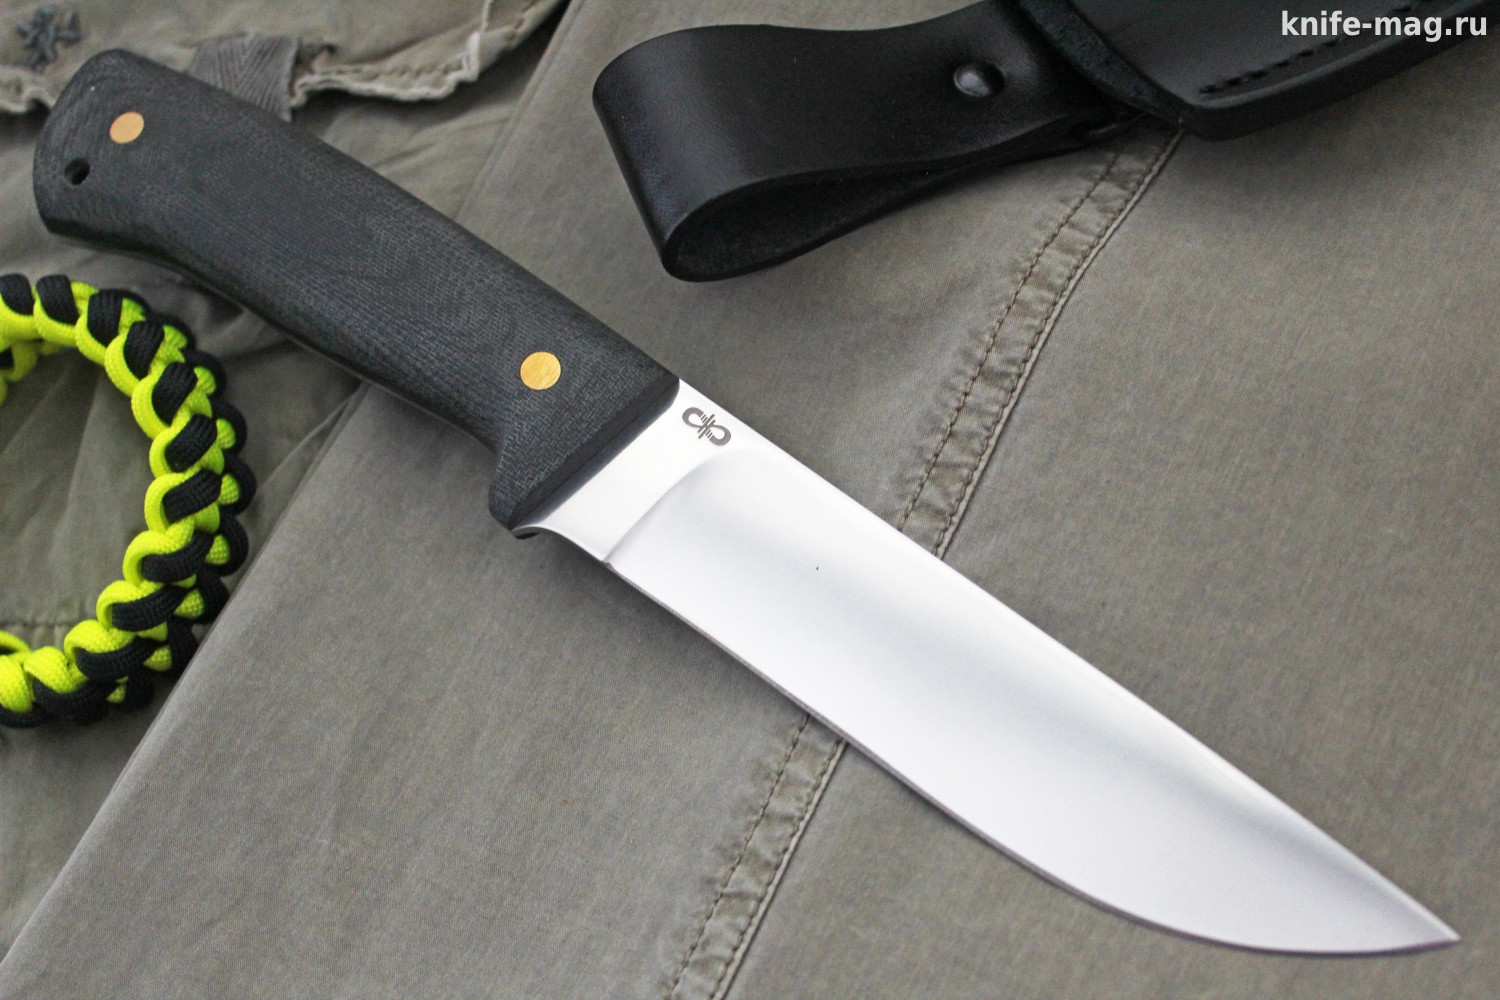 Купить нож Бекас (сталь 100х13М, цельнометаллический, накладки текстолит) |  KNIFE-MAG.RU